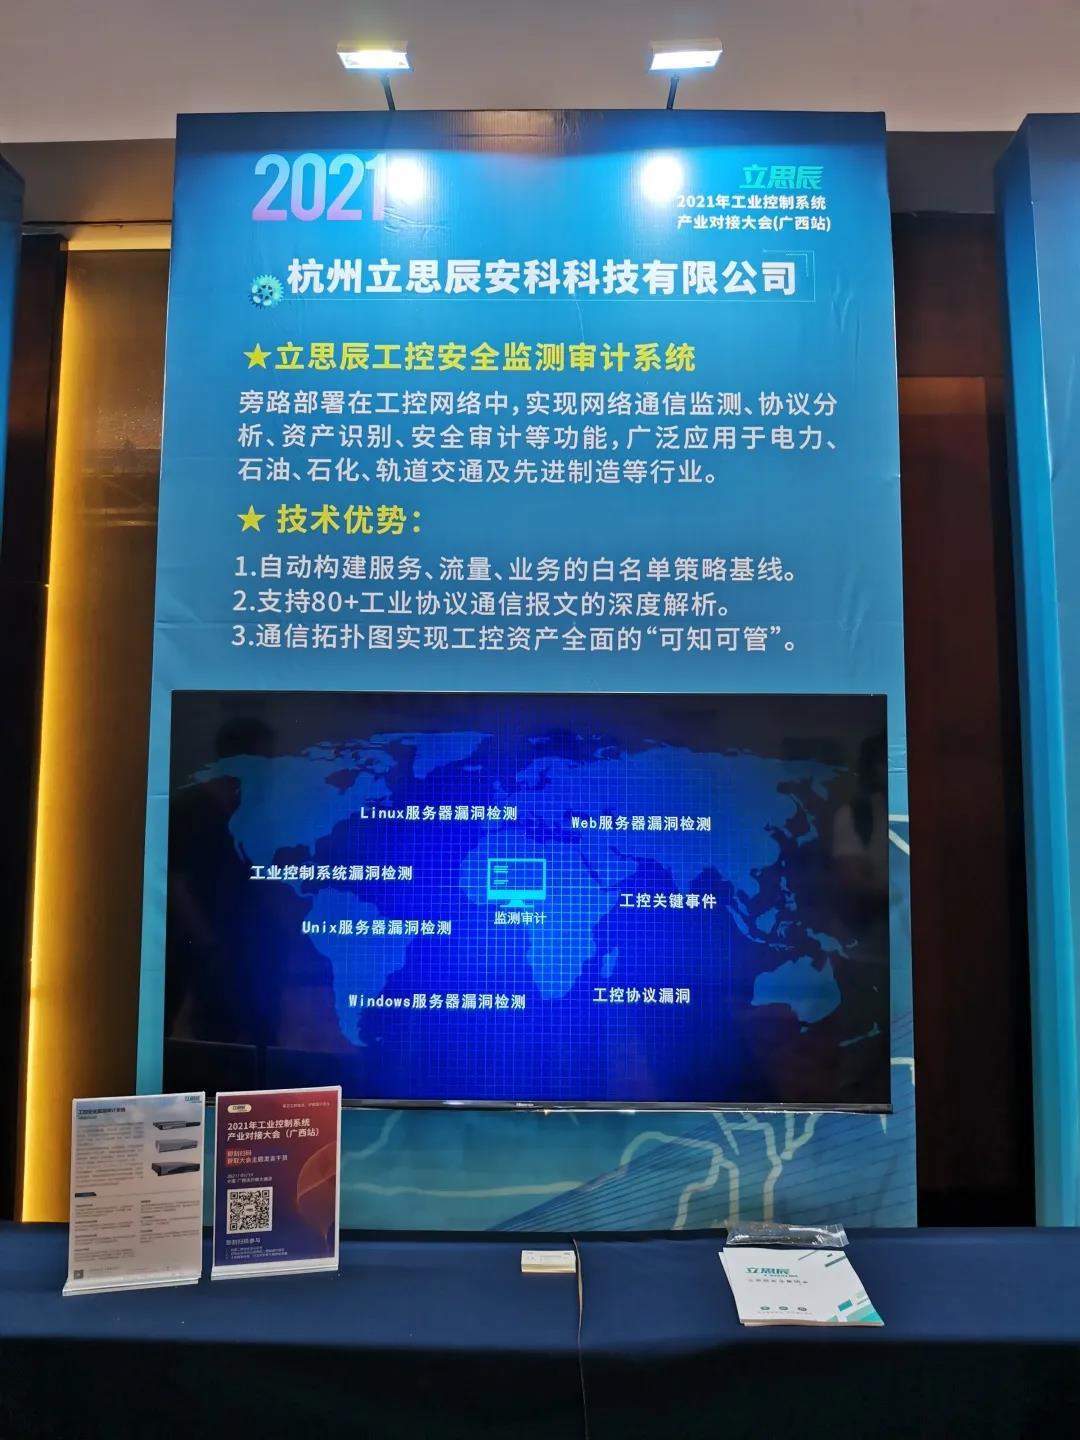  广西站立思辰精彩亮相2021年工业控制系统产业对接大会（广西站）